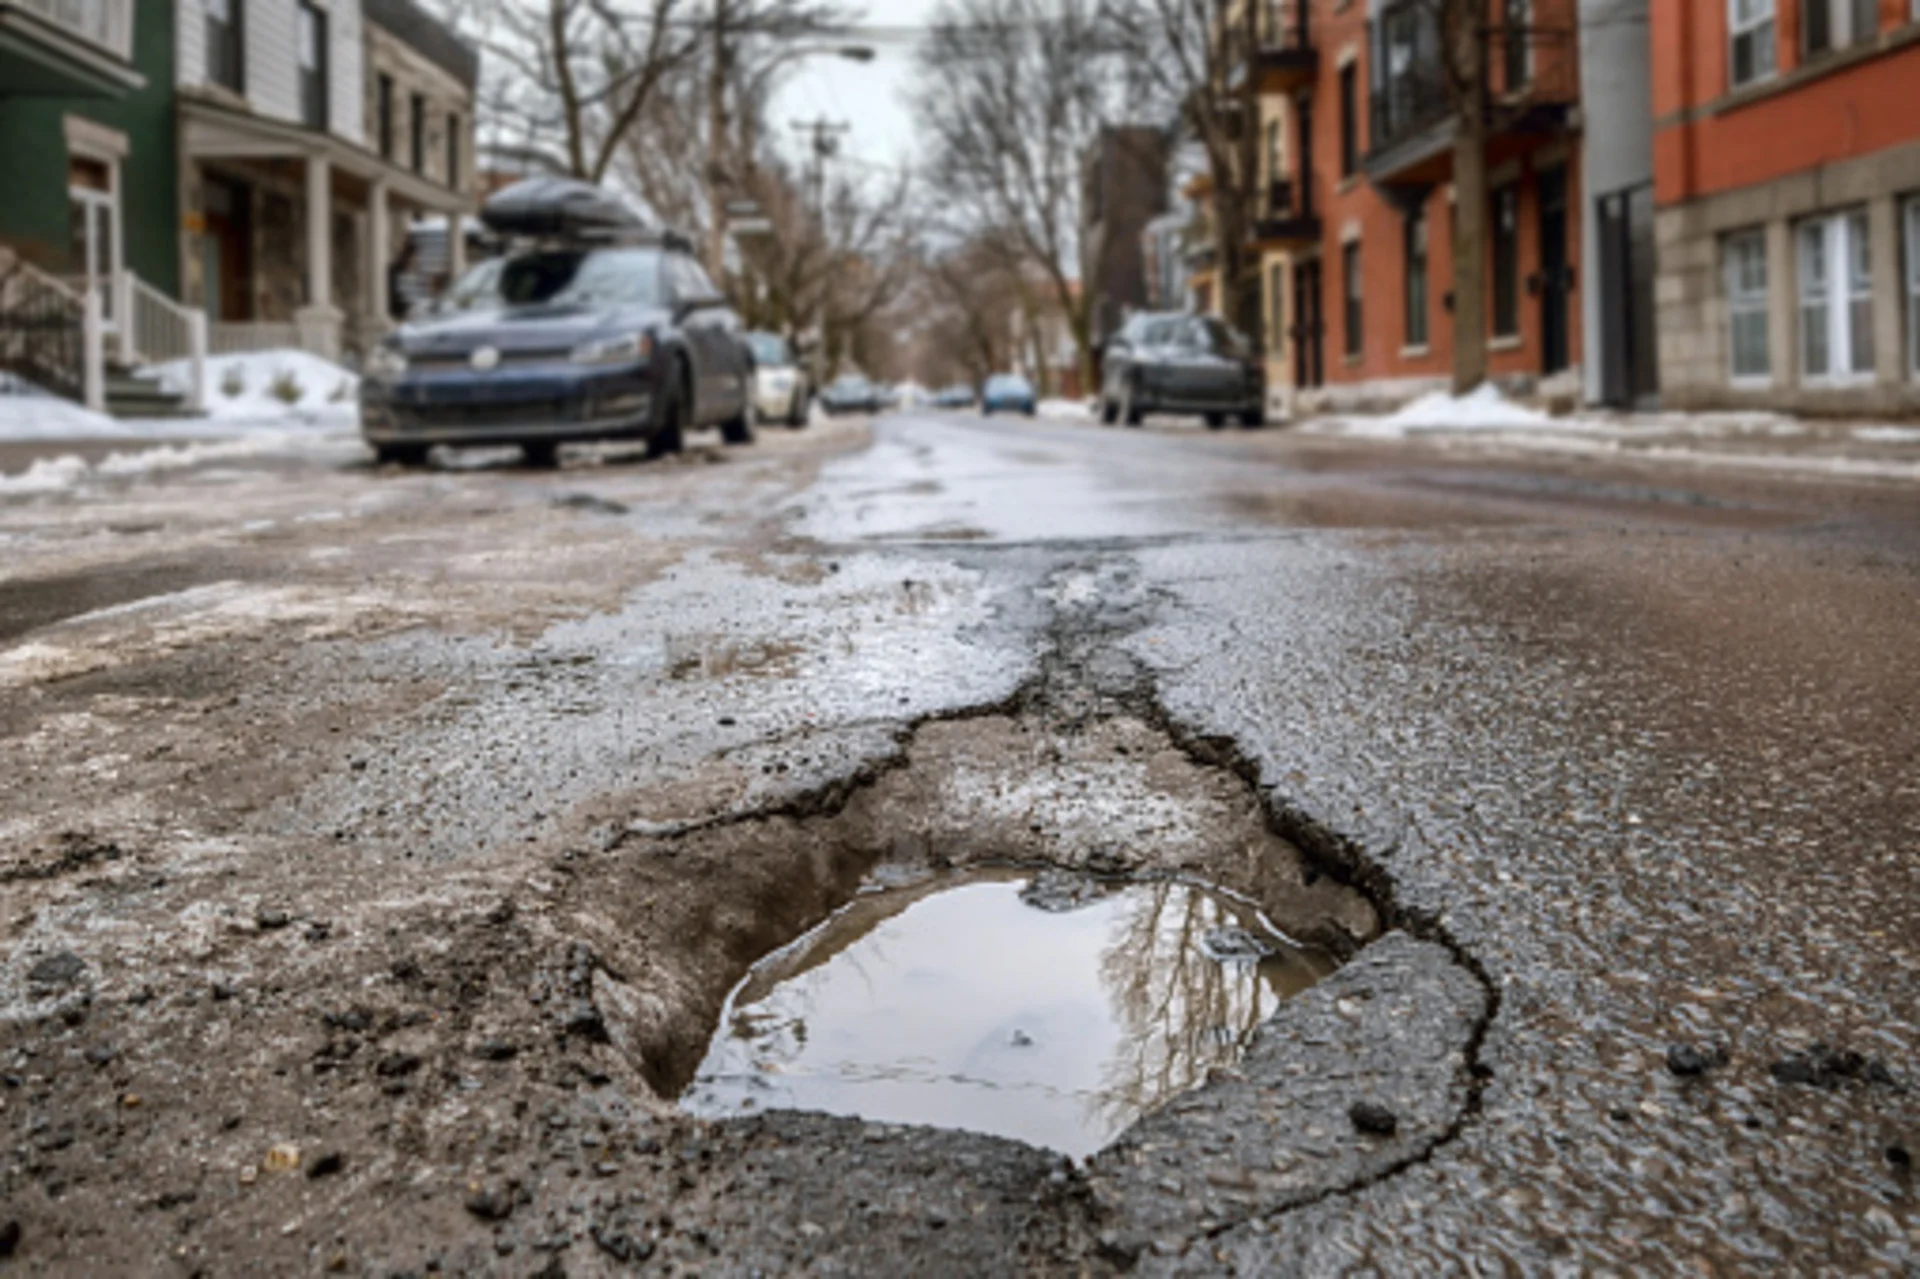 Most Nova Scotia claims for pothole compensation hit a dead end, data reveals